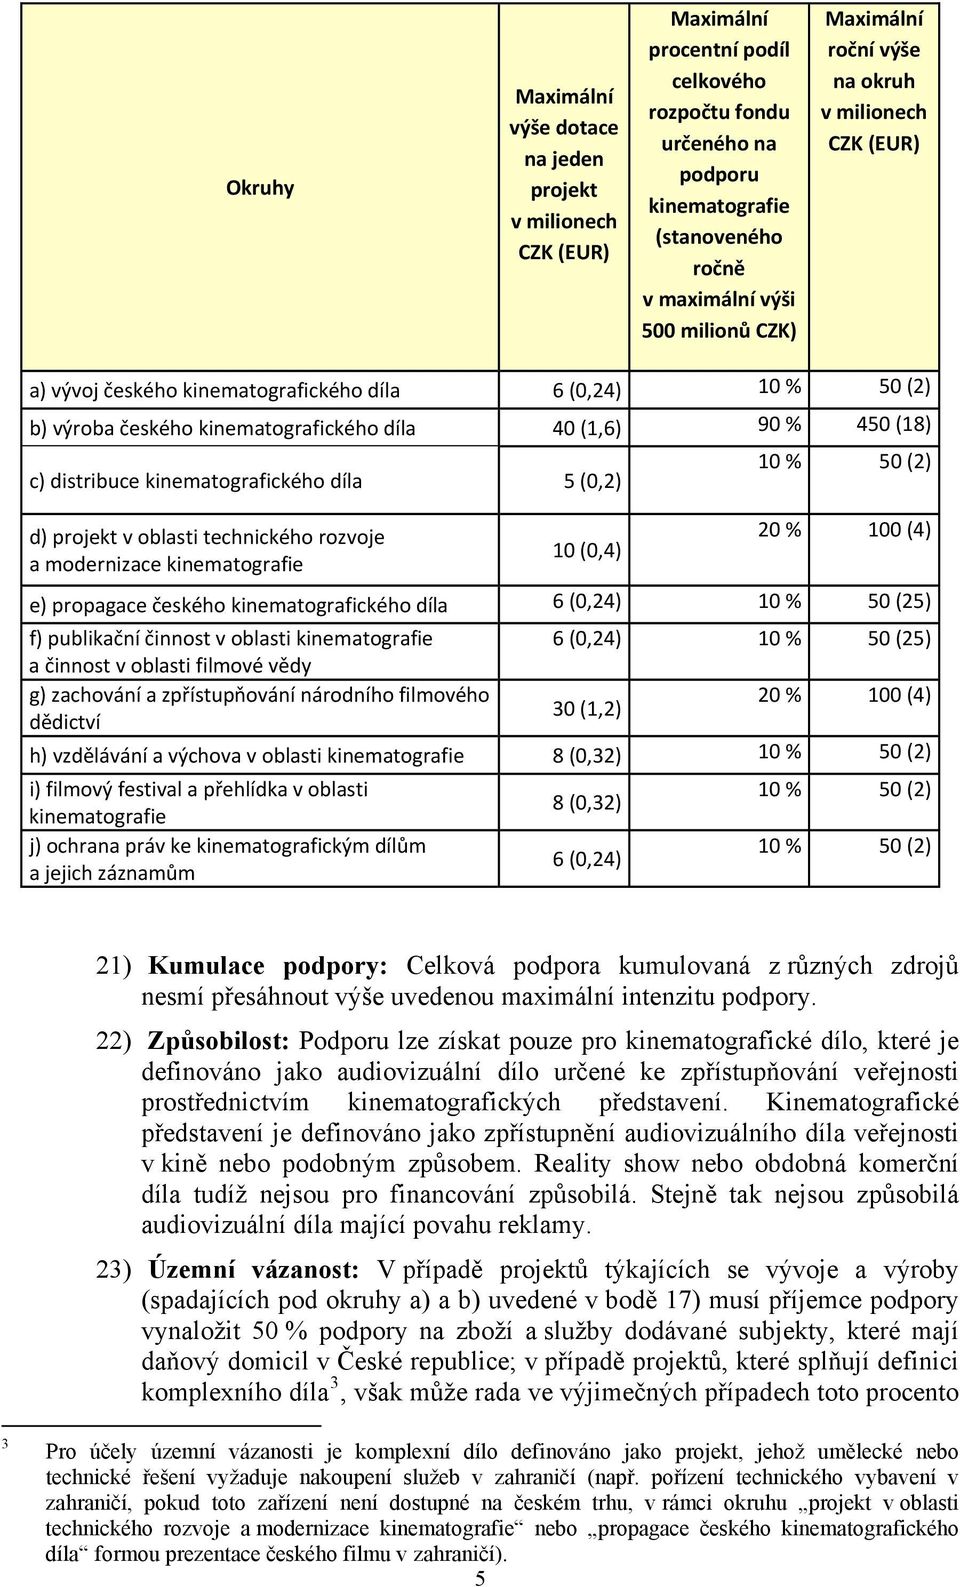 distribuce kinematografického díla 5 (0,2) d) projekt v oblasti technického rozvoje a modernizace kinematografie 10 (0,4) 10 % 50 (2) 20 % 100 (4) e) propagace českého kinematografického díla 6